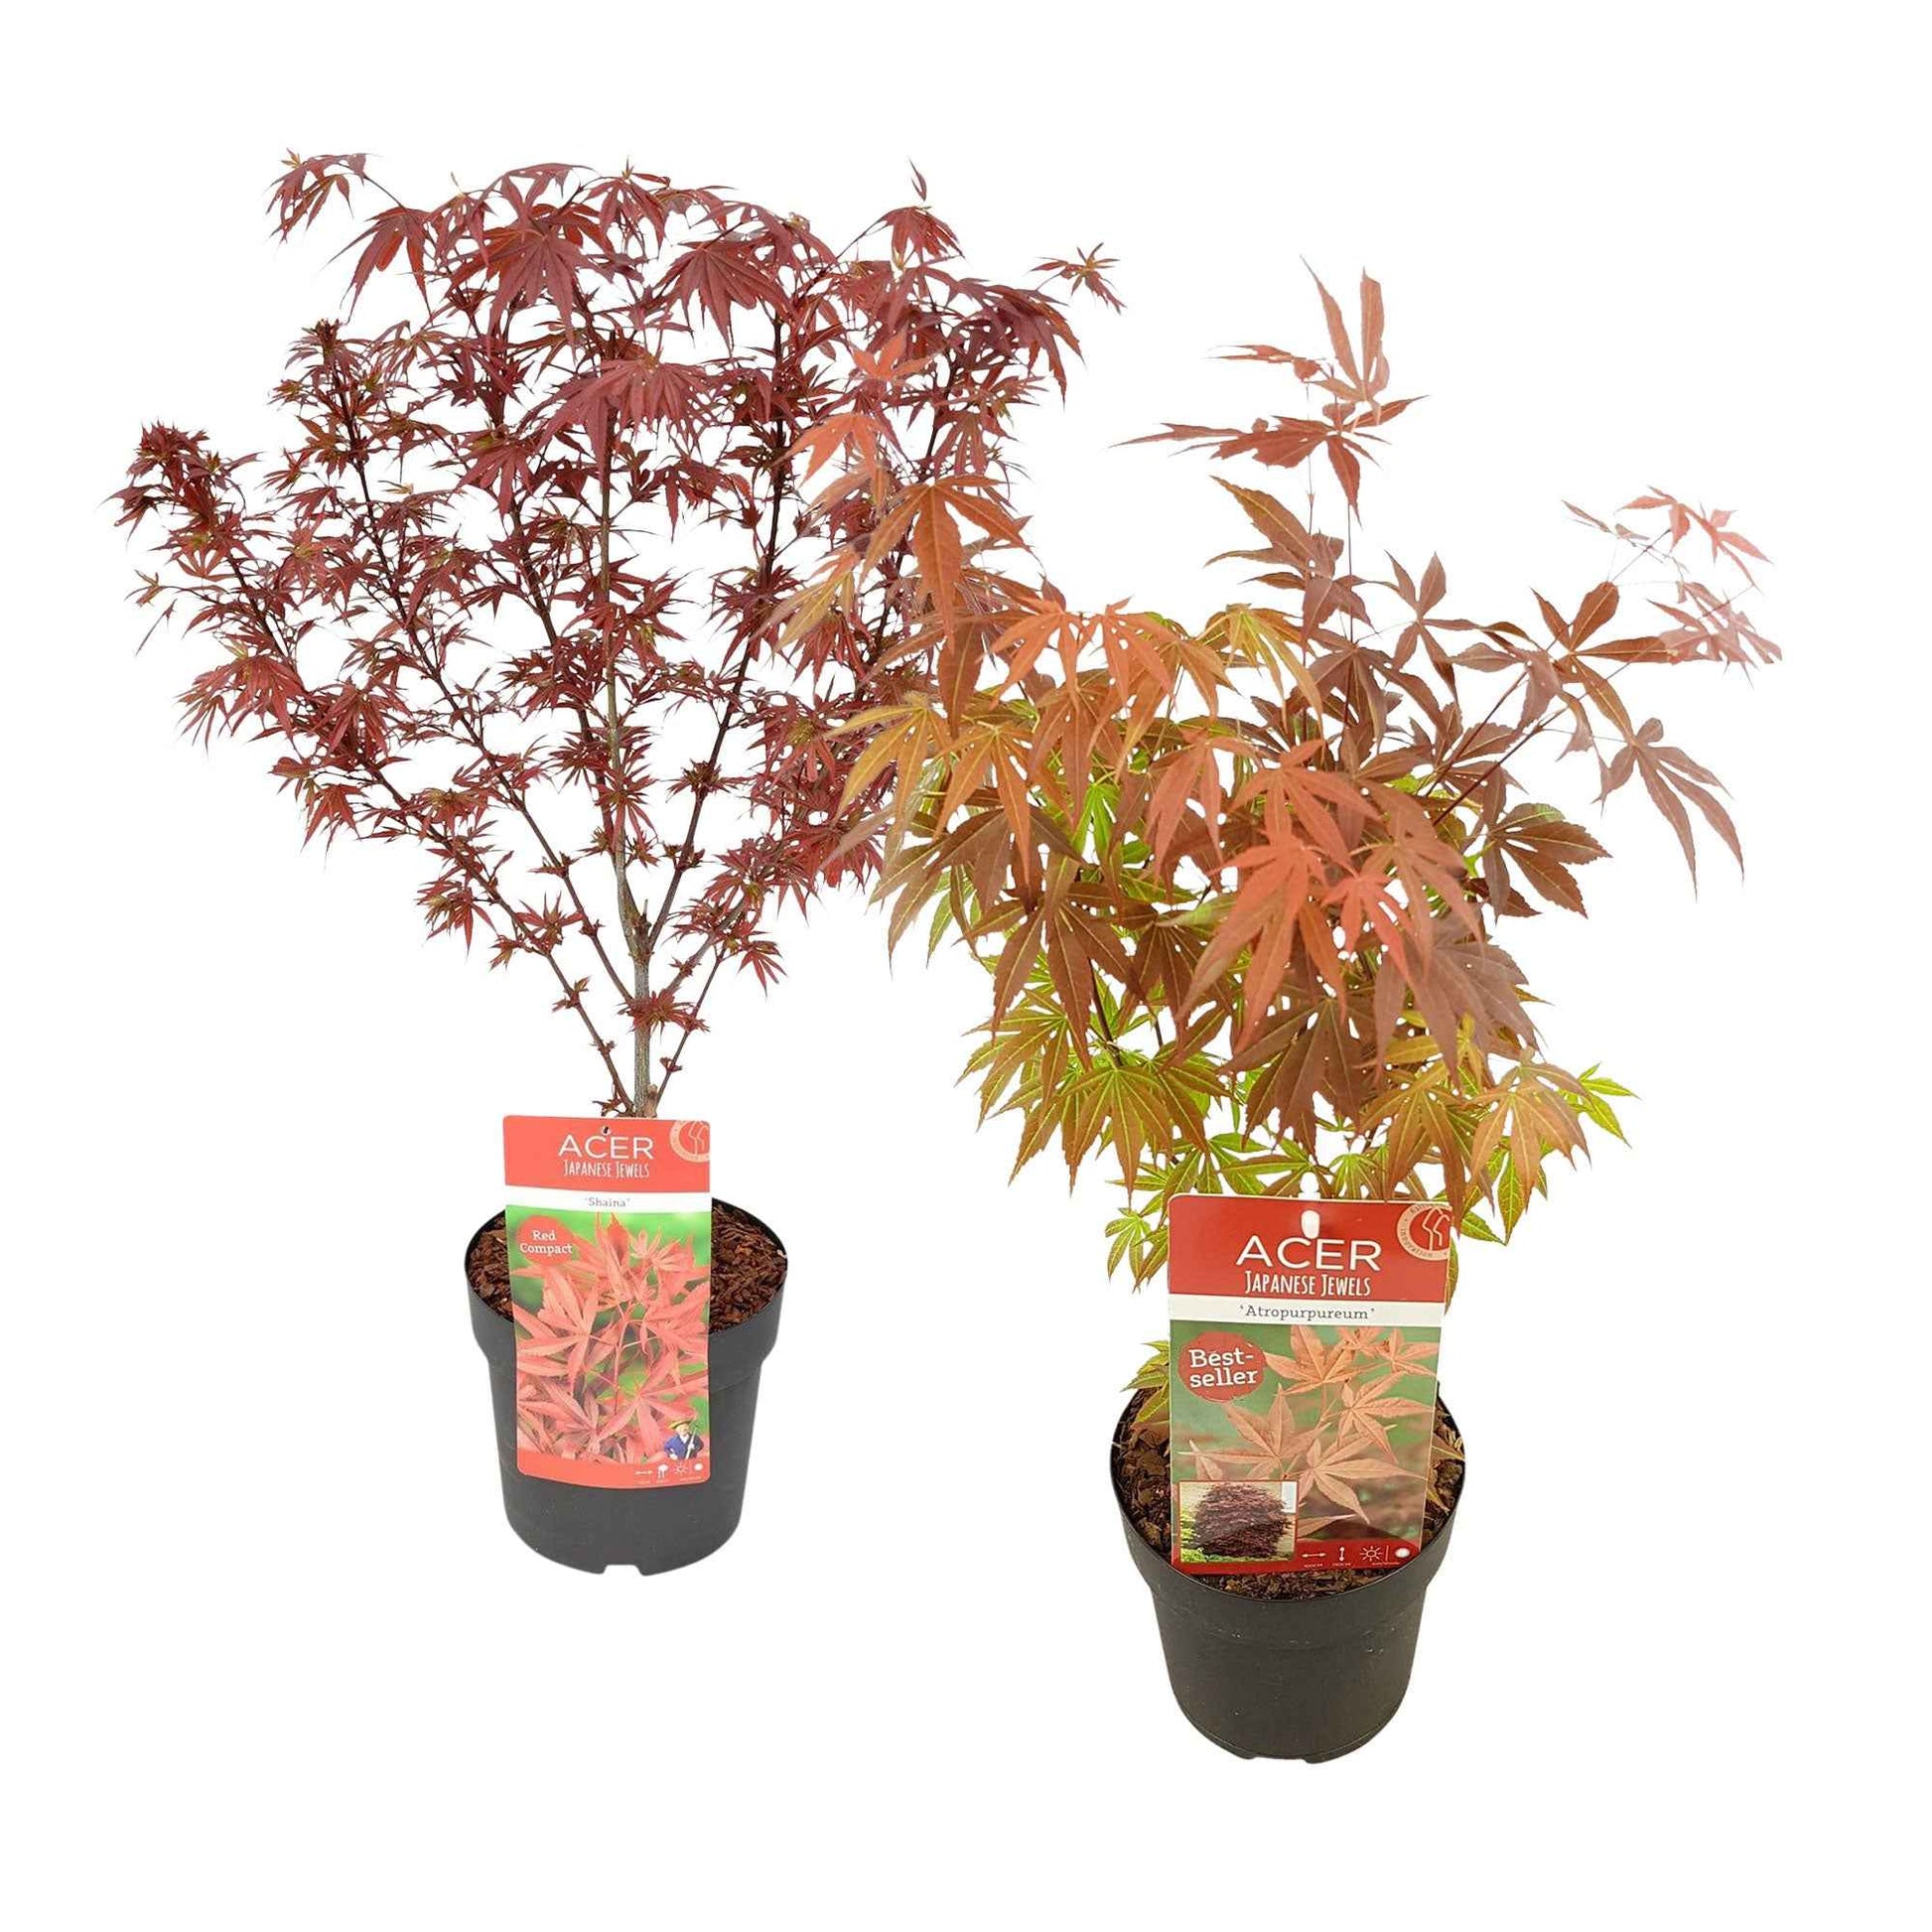 2x Érable du Japon Acer 'Atropurpureum' + 'Shaina' rouge - Arbustes